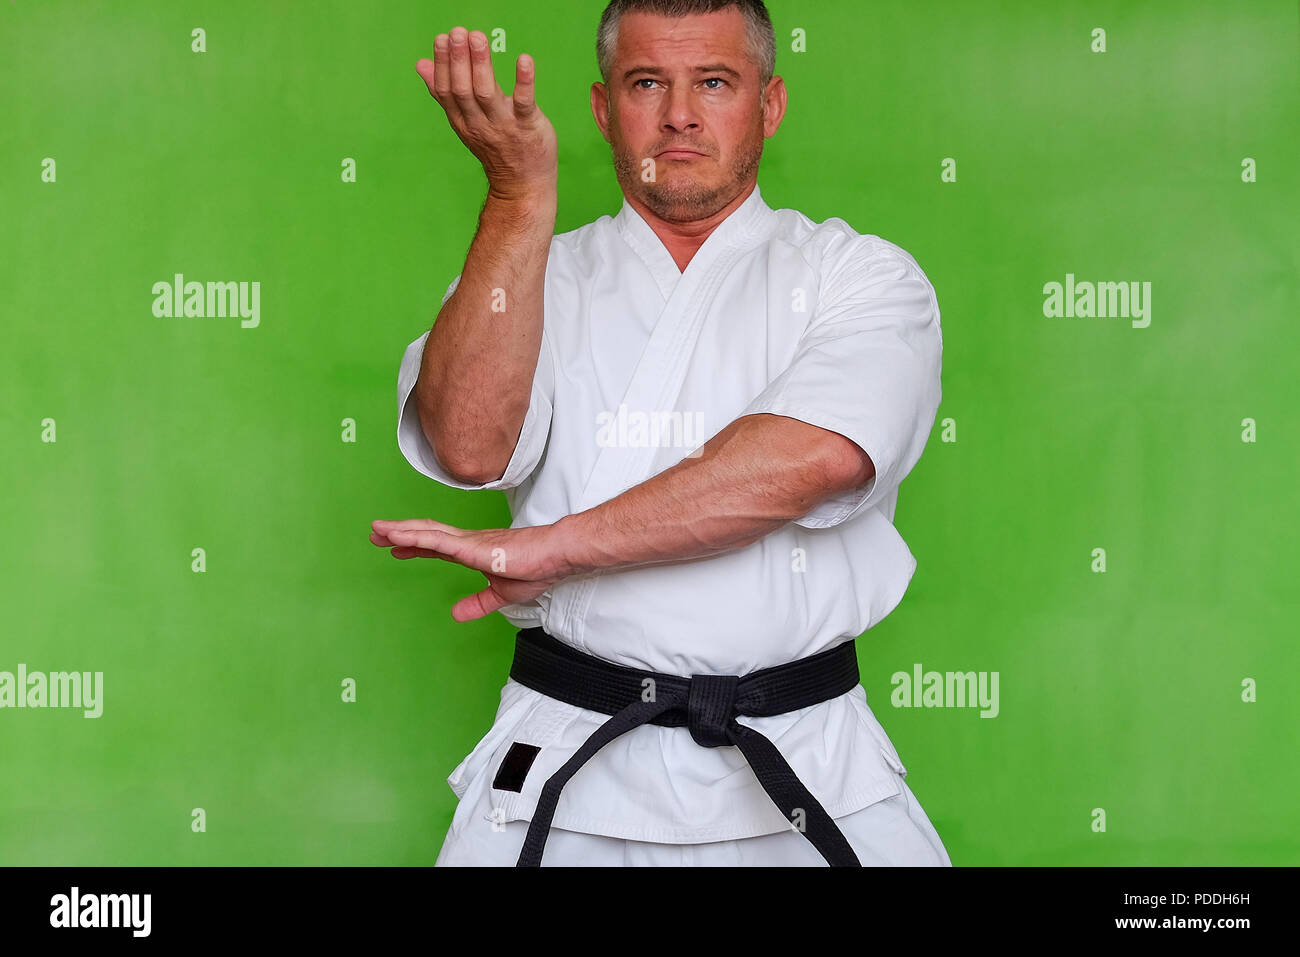 Kudo karate immagini e fotografie stock ad alta risoluzione - Alamy